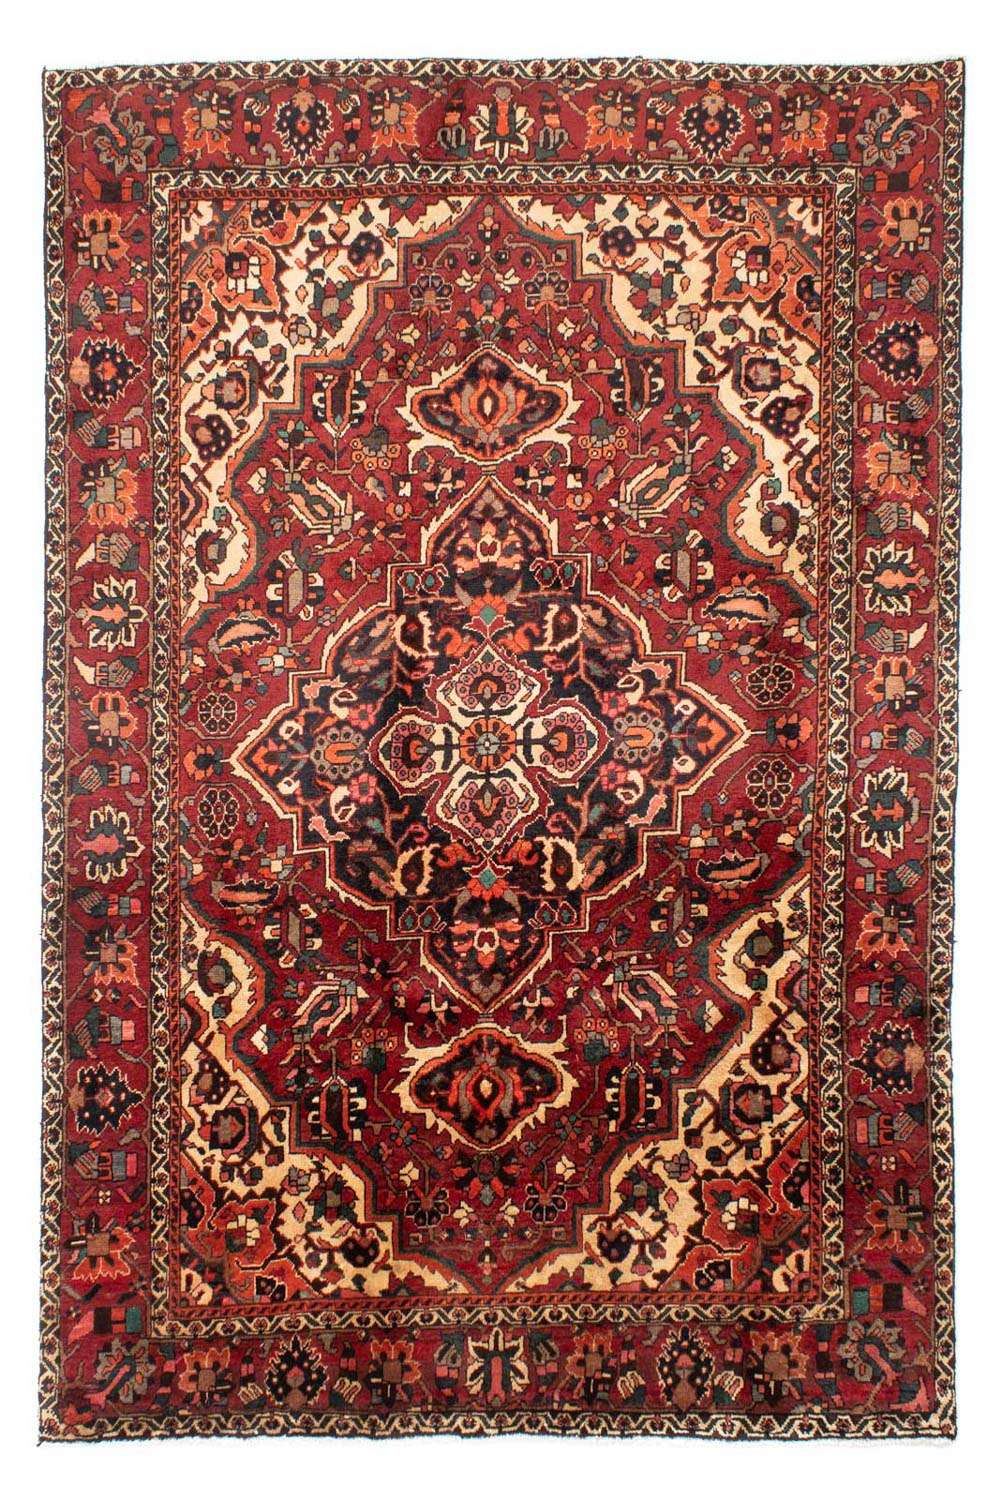 Alfombra persa - Nómada - 295 x 202 cm - rojo oscuro